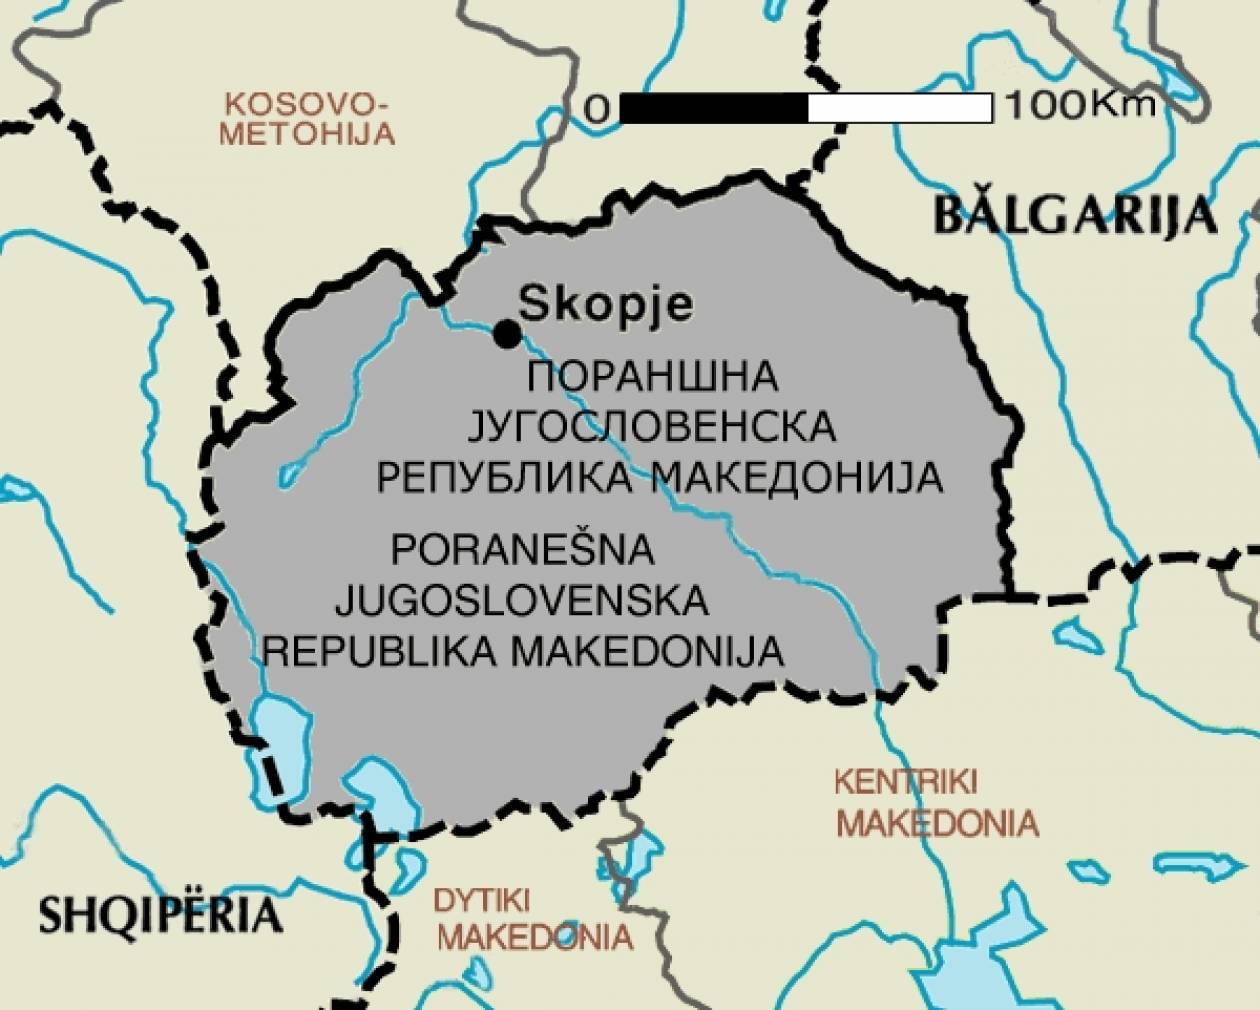 Σκόπια: Τα δύο κυβερνητικά κόμματα, οι νικητές των τοπικών εκλογών